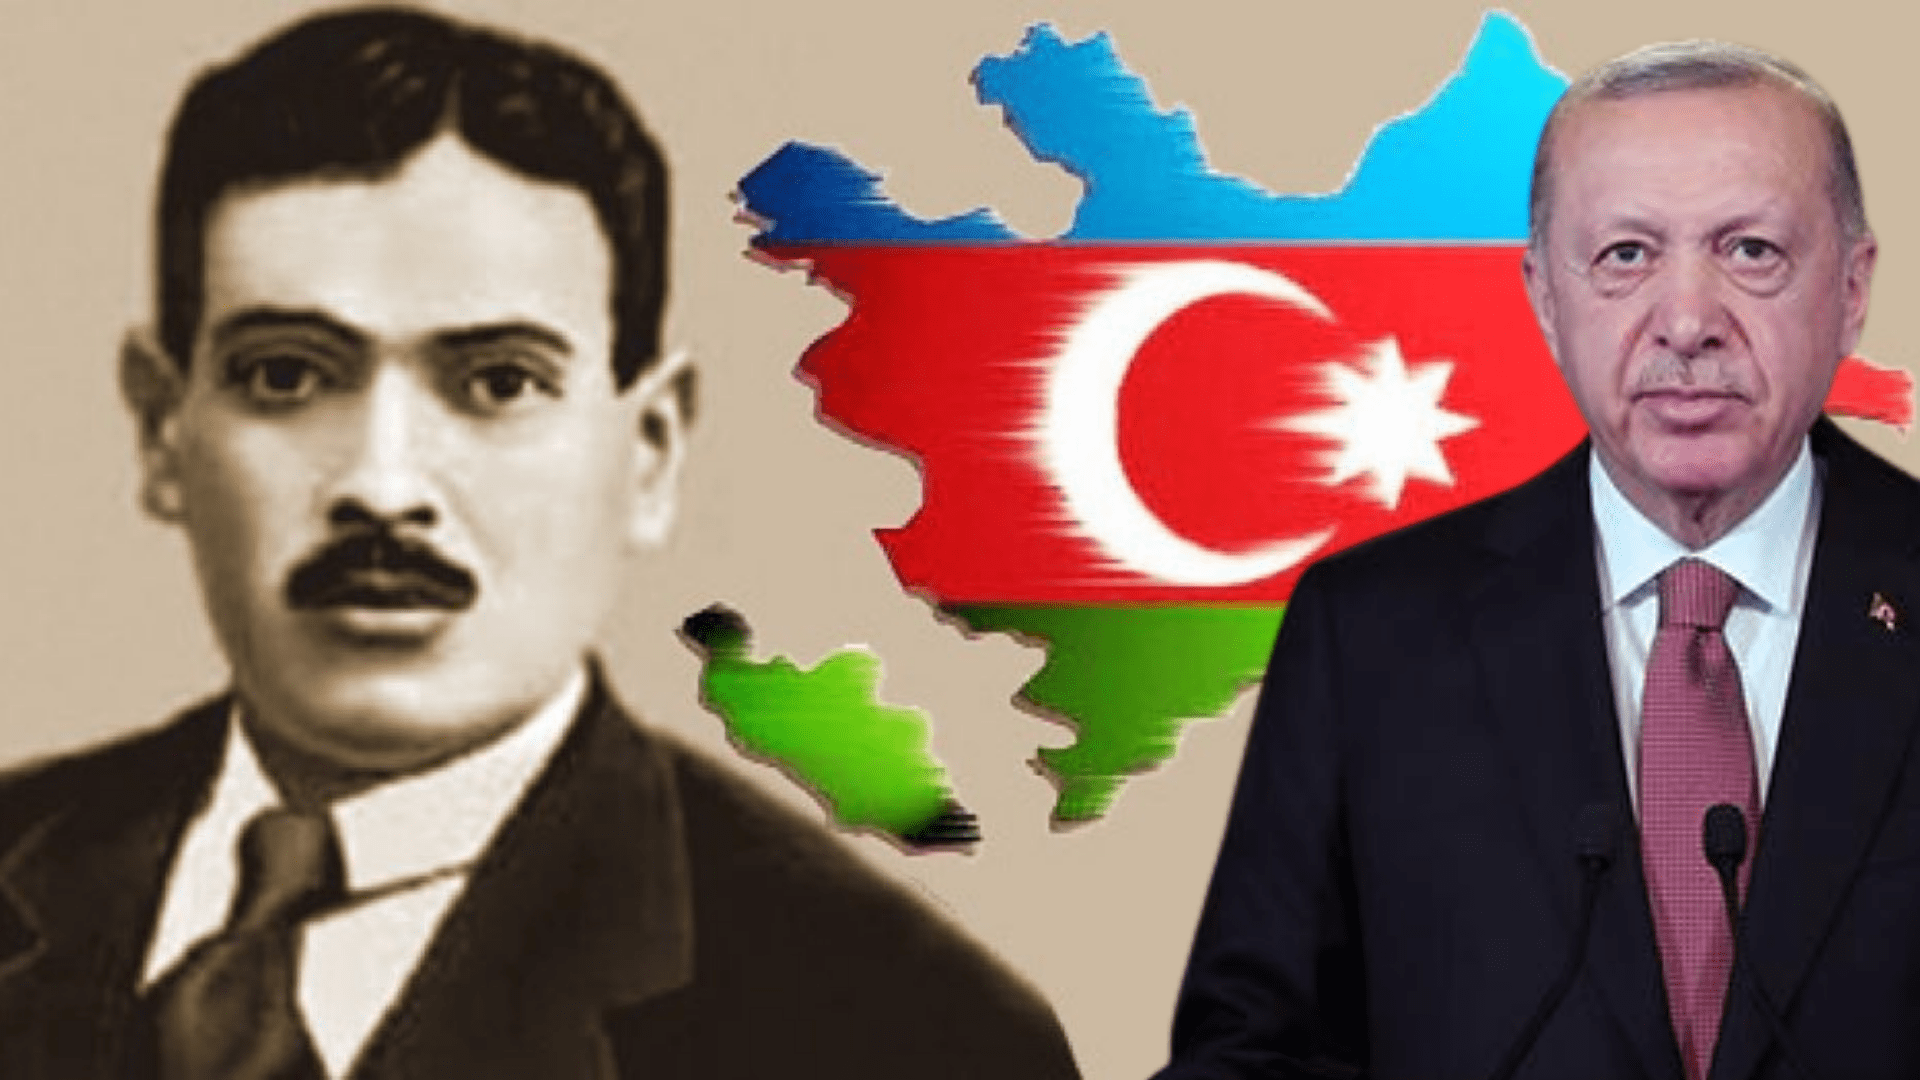 Azerbaycan’ın Milli Şairi ve ‘Çırpınırdı Karadeniz’in’ söz yazarı merhum Ahmet Cevad’ın torunundan  Cumhurbaşkanı Recep Tayyip Erdoğan’a mesaj var